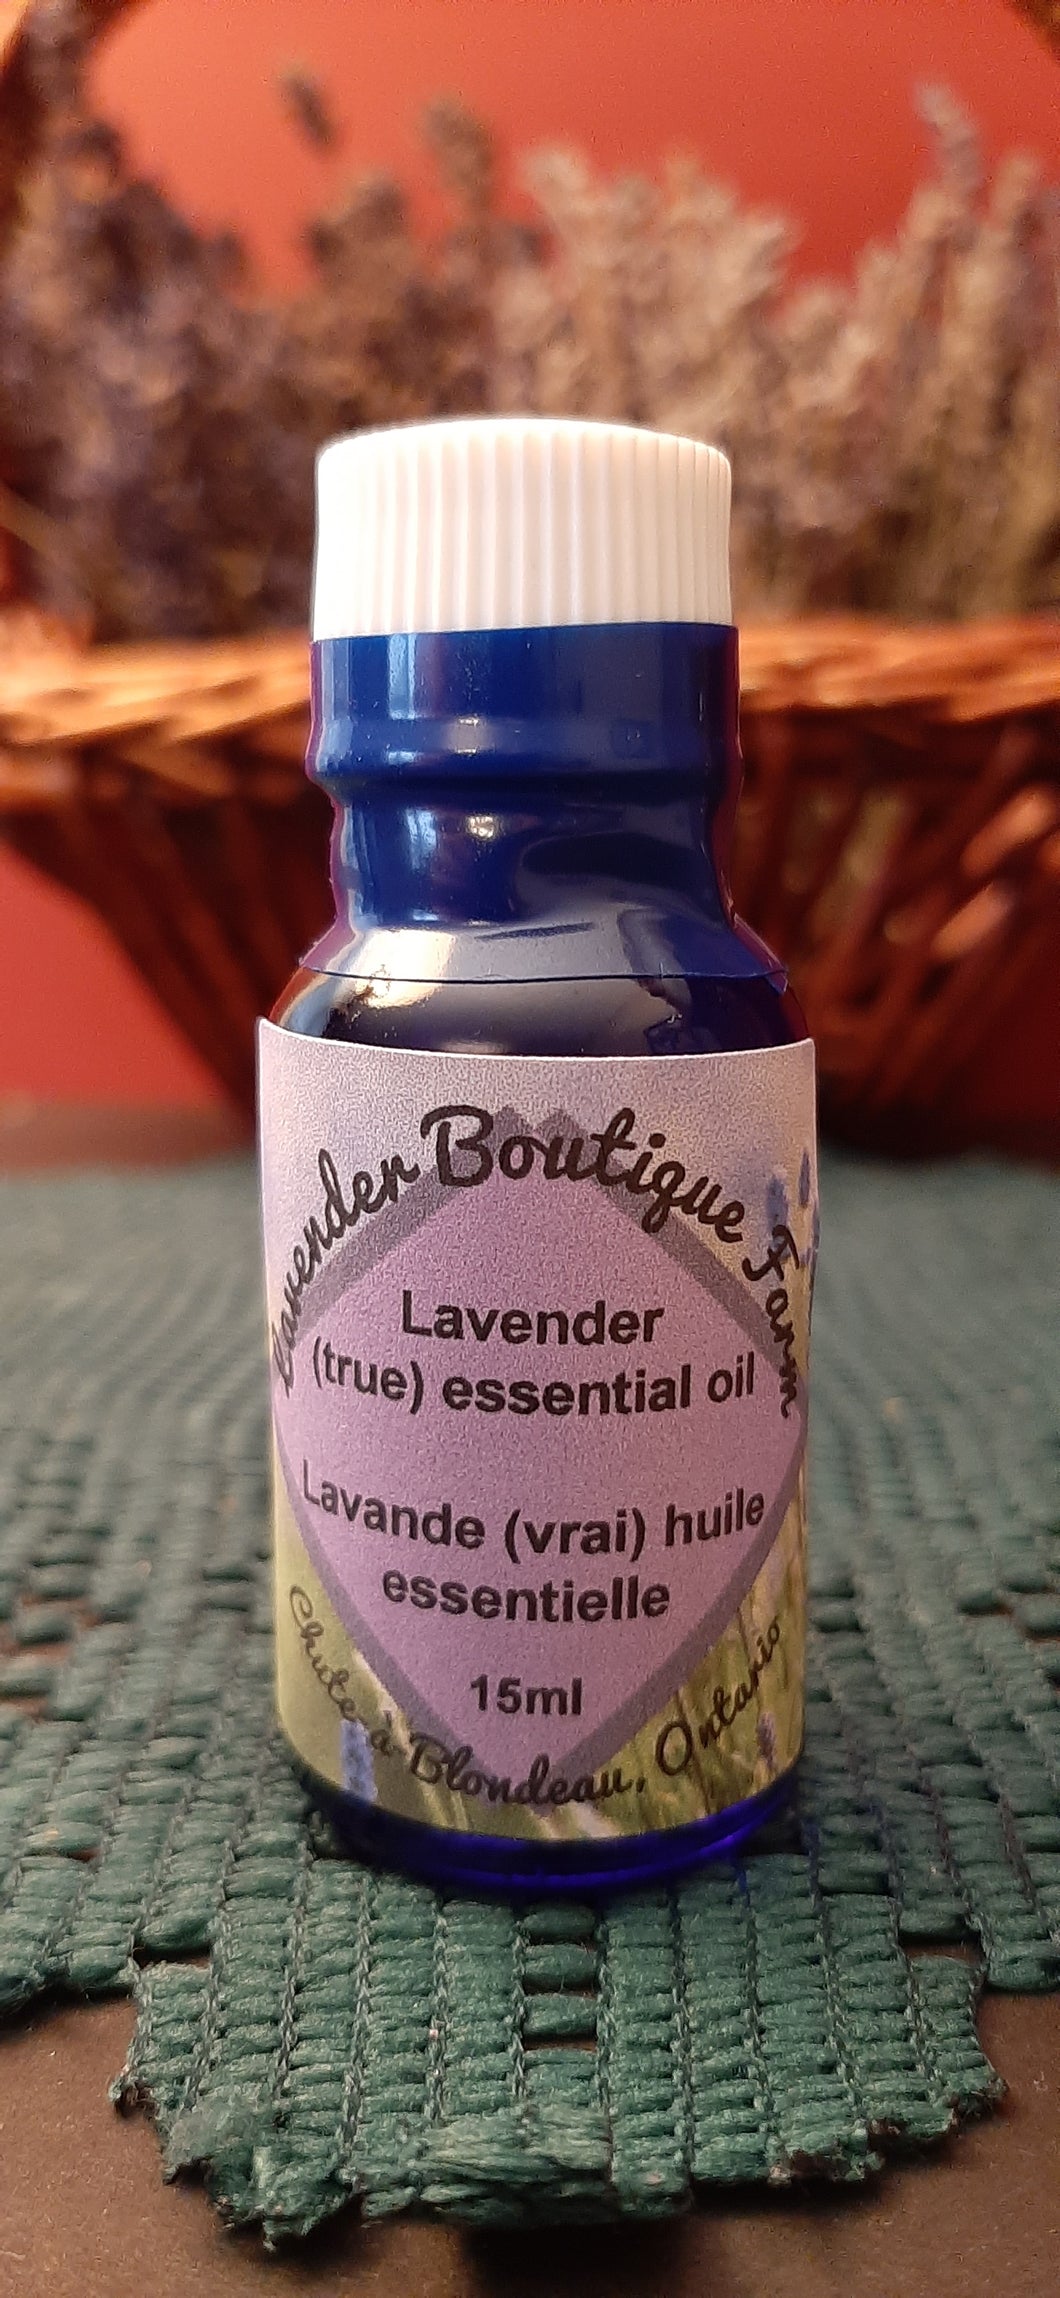 Lavender true essential oil